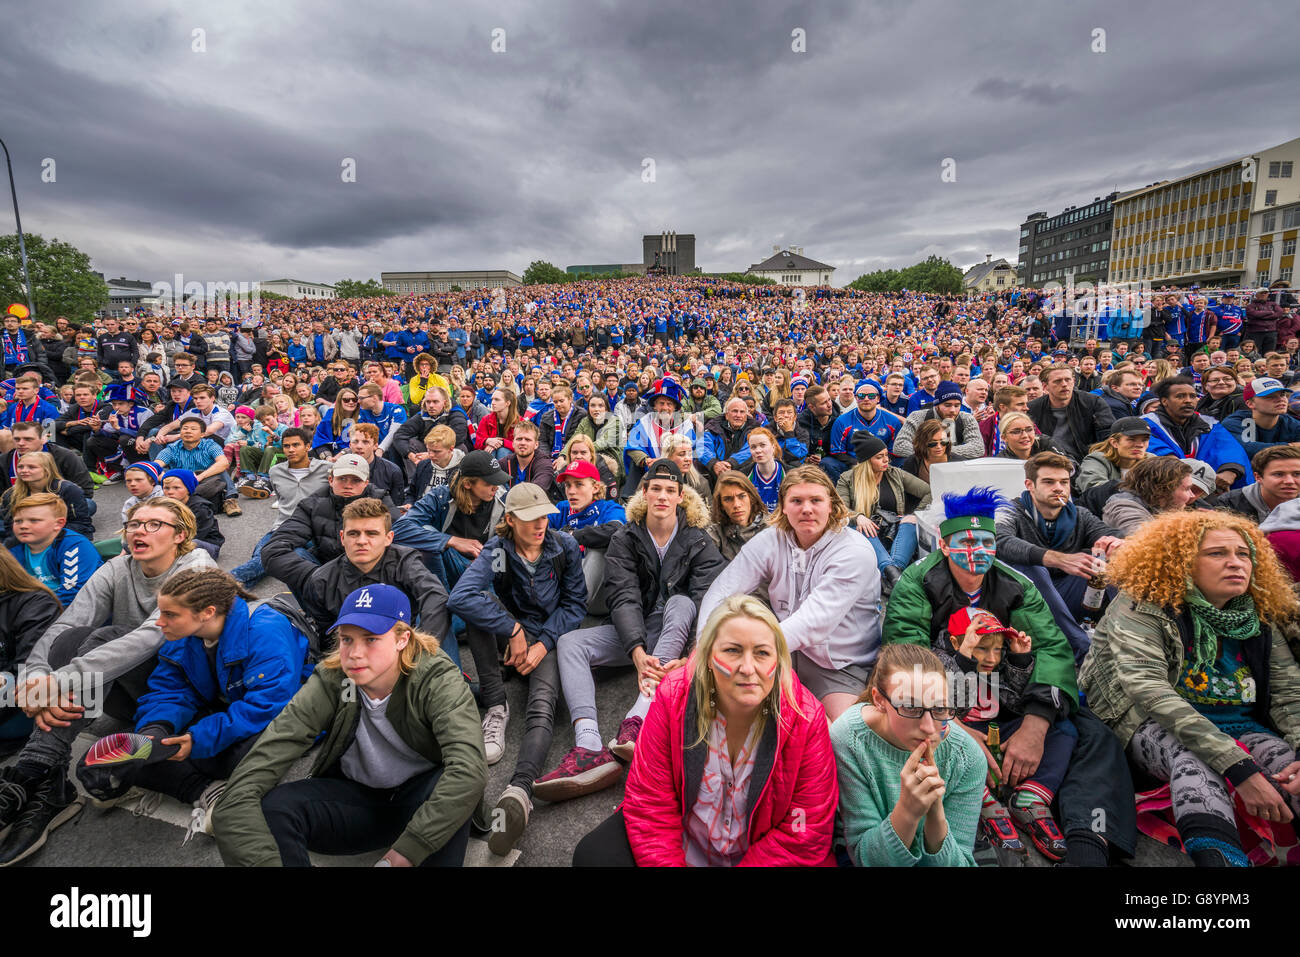 Las multitudes en el centro de Reykjavik viendo Islandia vs Inglaterra en el torneo de fútbol de la UEFA Euro 2016, Reykjavik, Iceland. Islandia ganó 2-1. Junio 27, 2016 Foto de stock